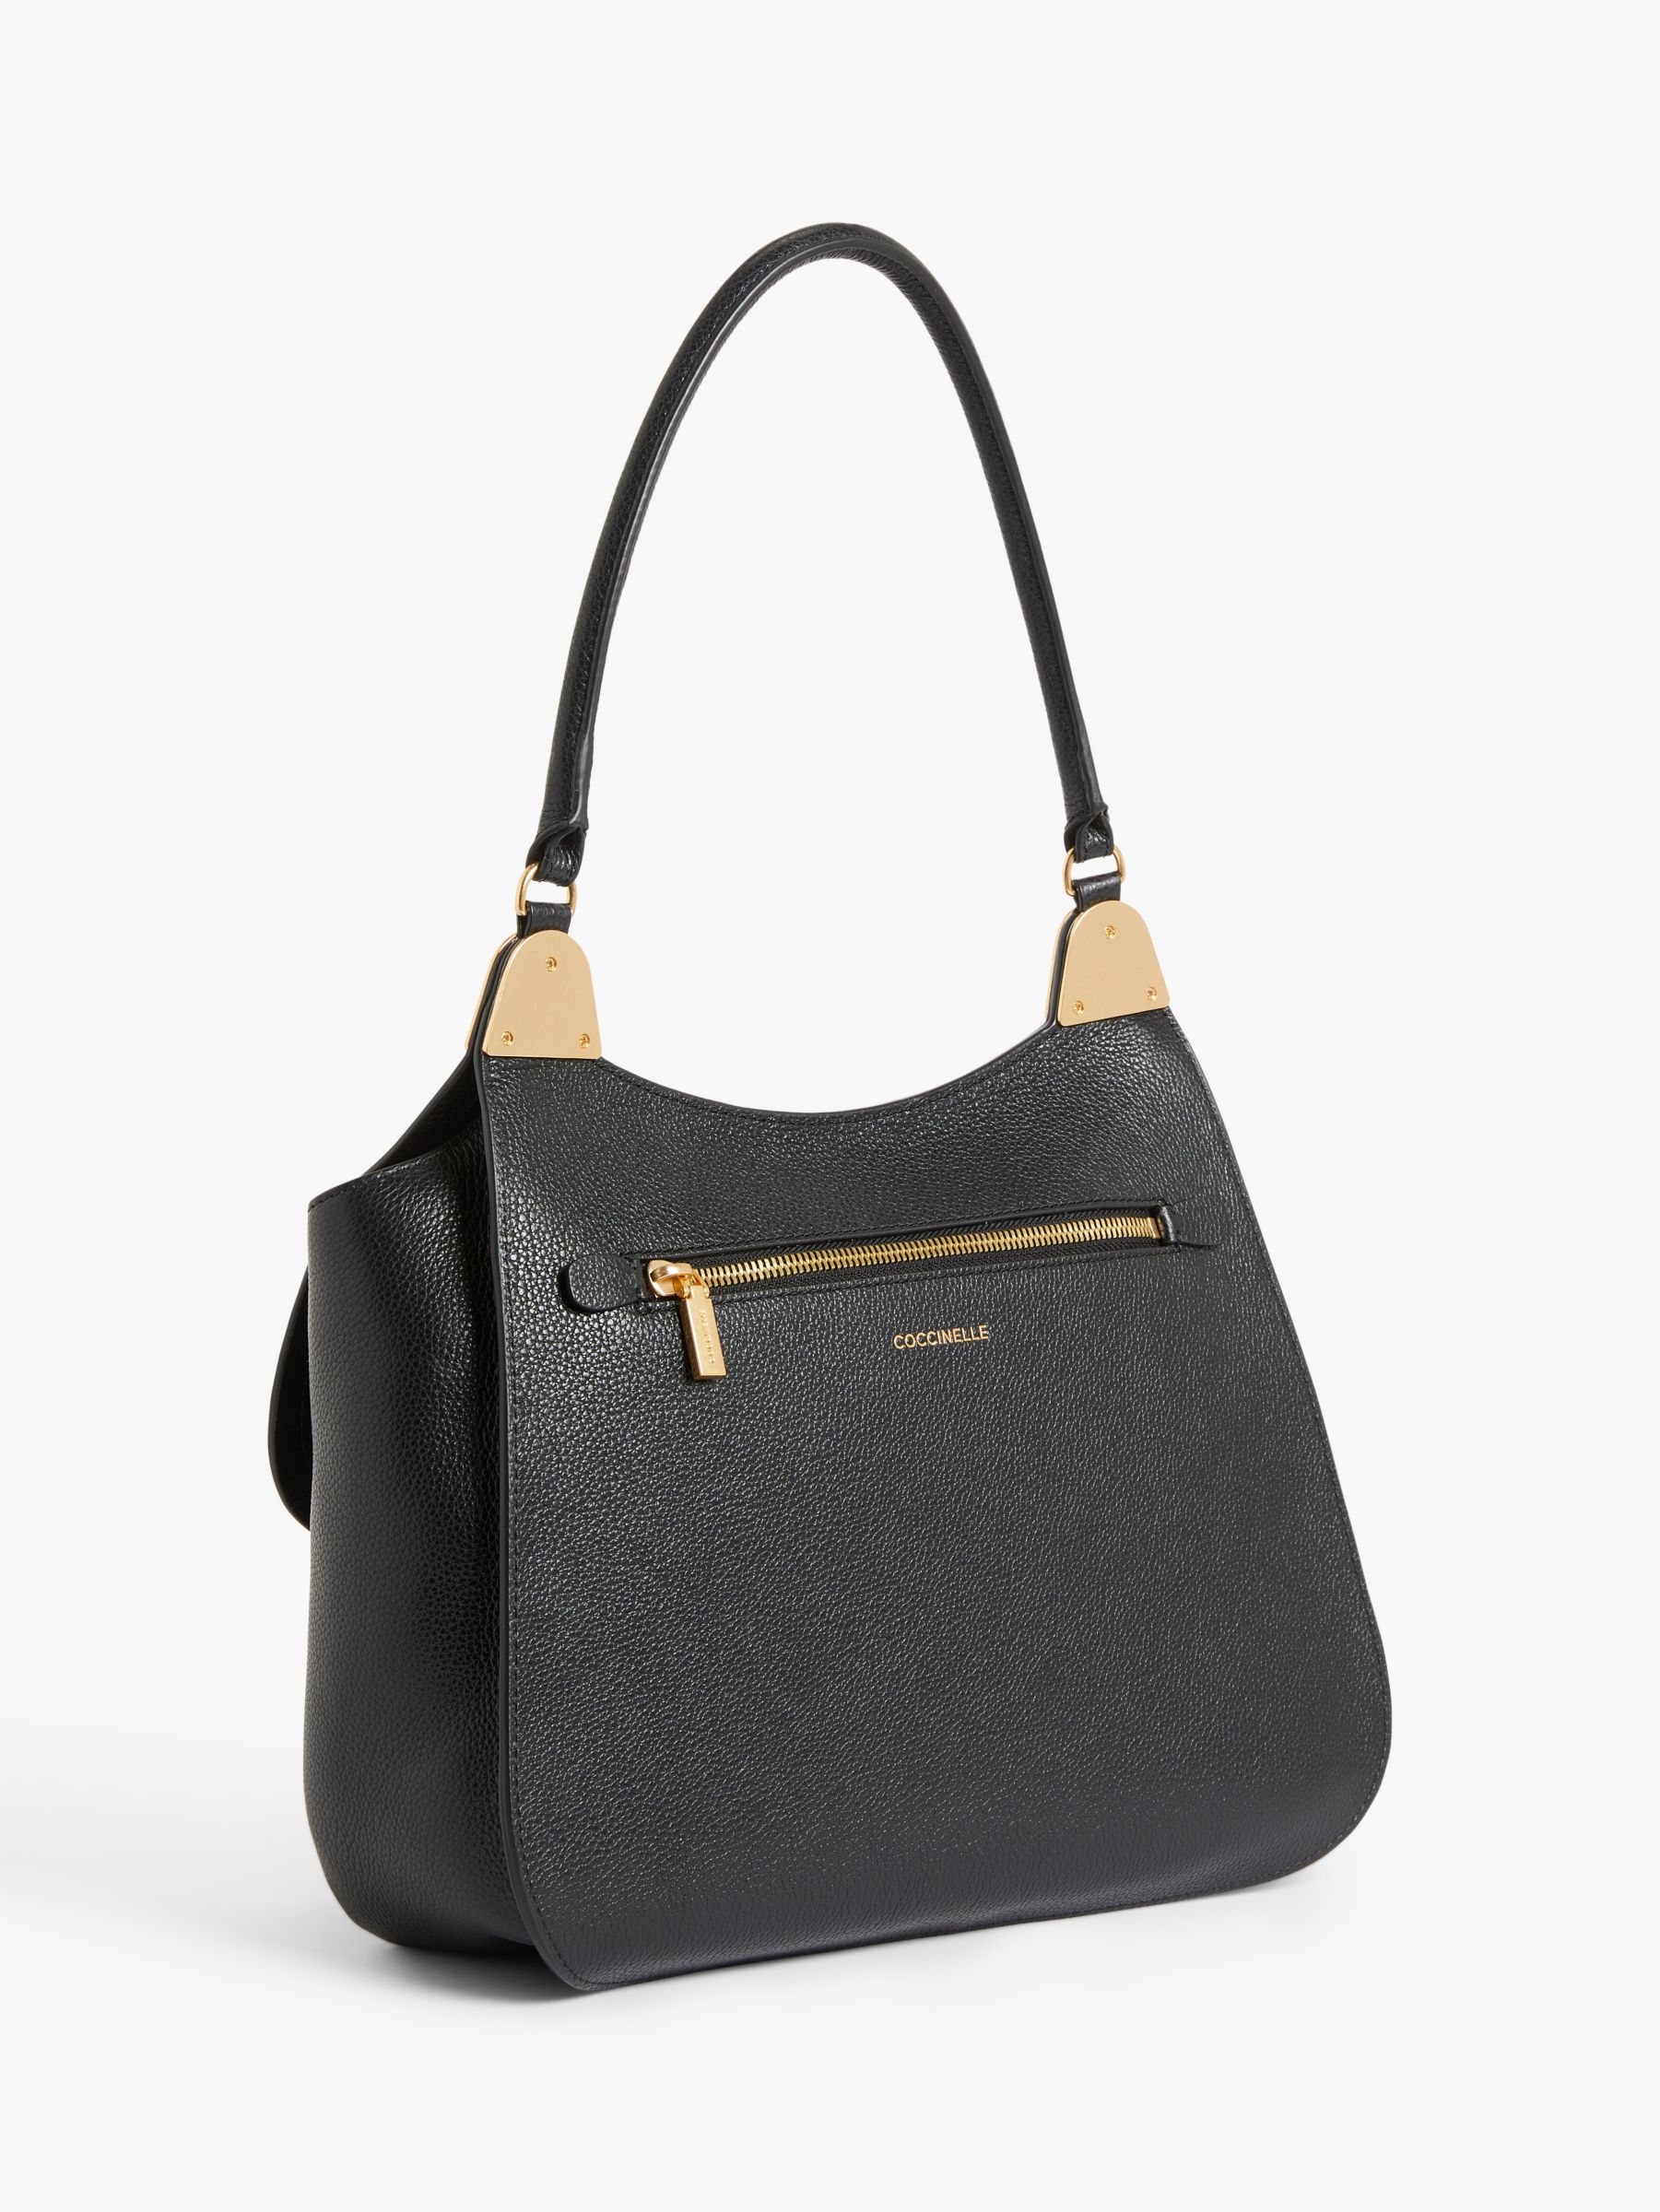 Coccinelle Fauve Leather Shoulder Bag